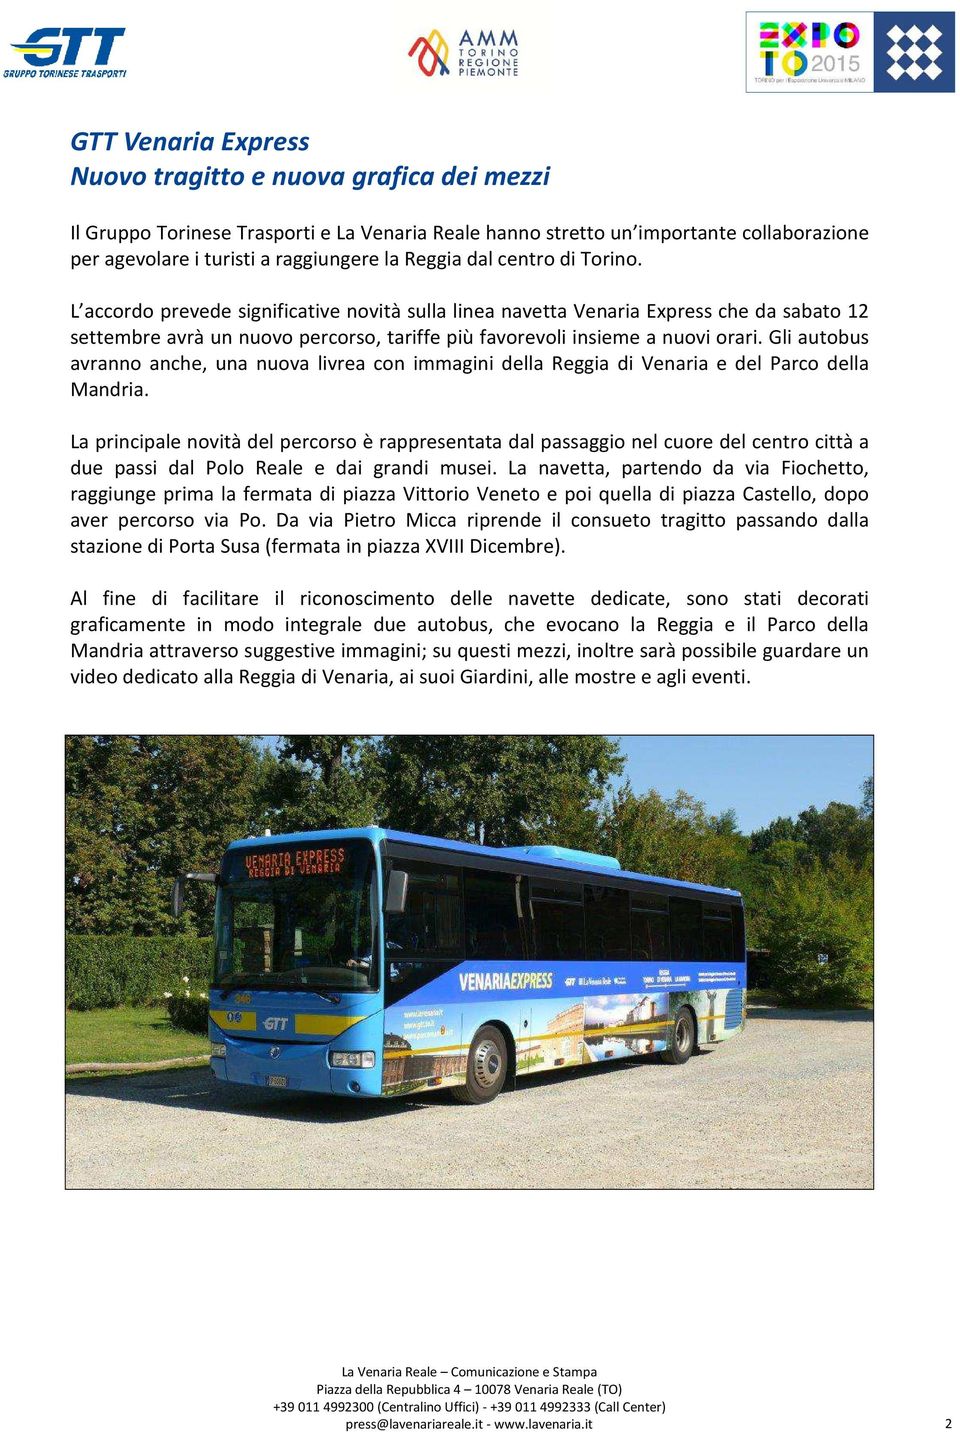 Gli autobus avranno anche, una nuova livrea con immagini della Reggia di Venaria e del Parco della Mandria.